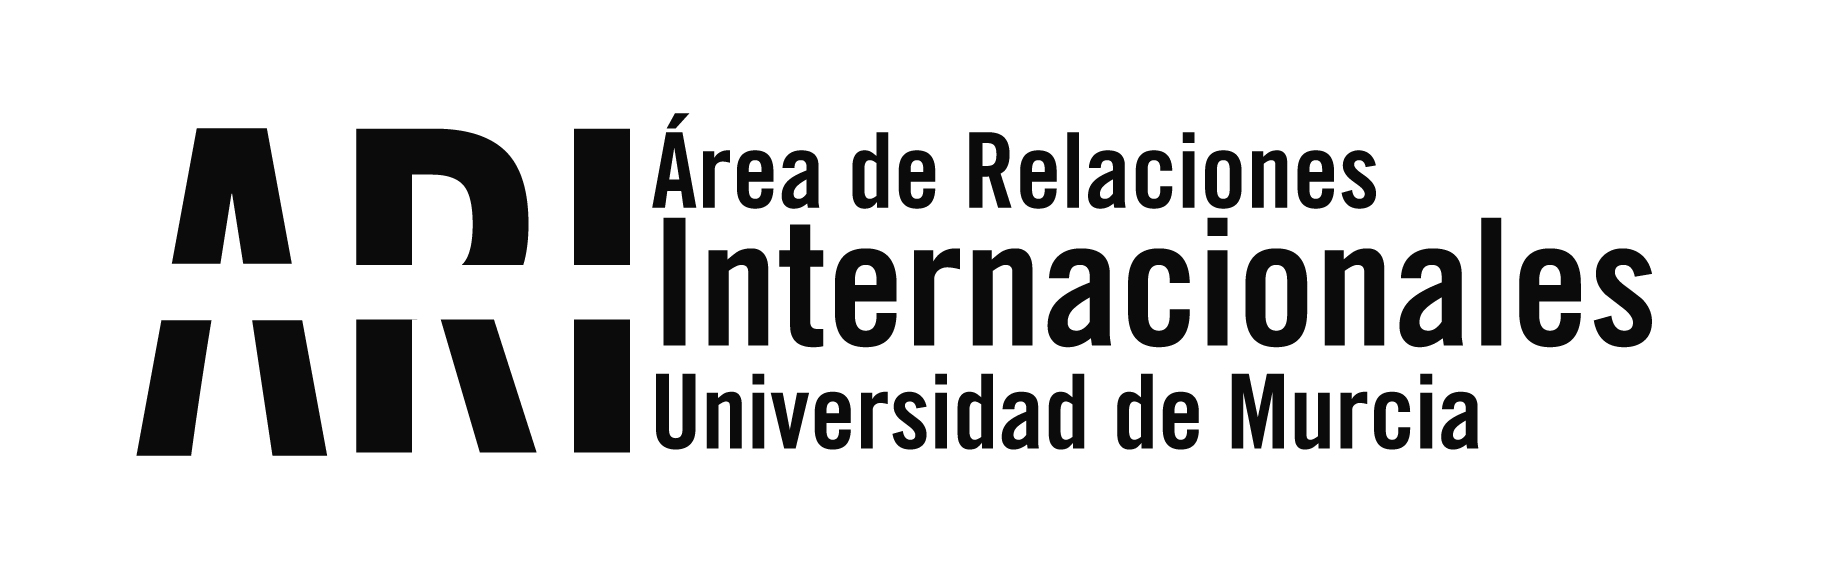 Visita del representante de la UMU en Argentina - Área de Relaciones Internacionales